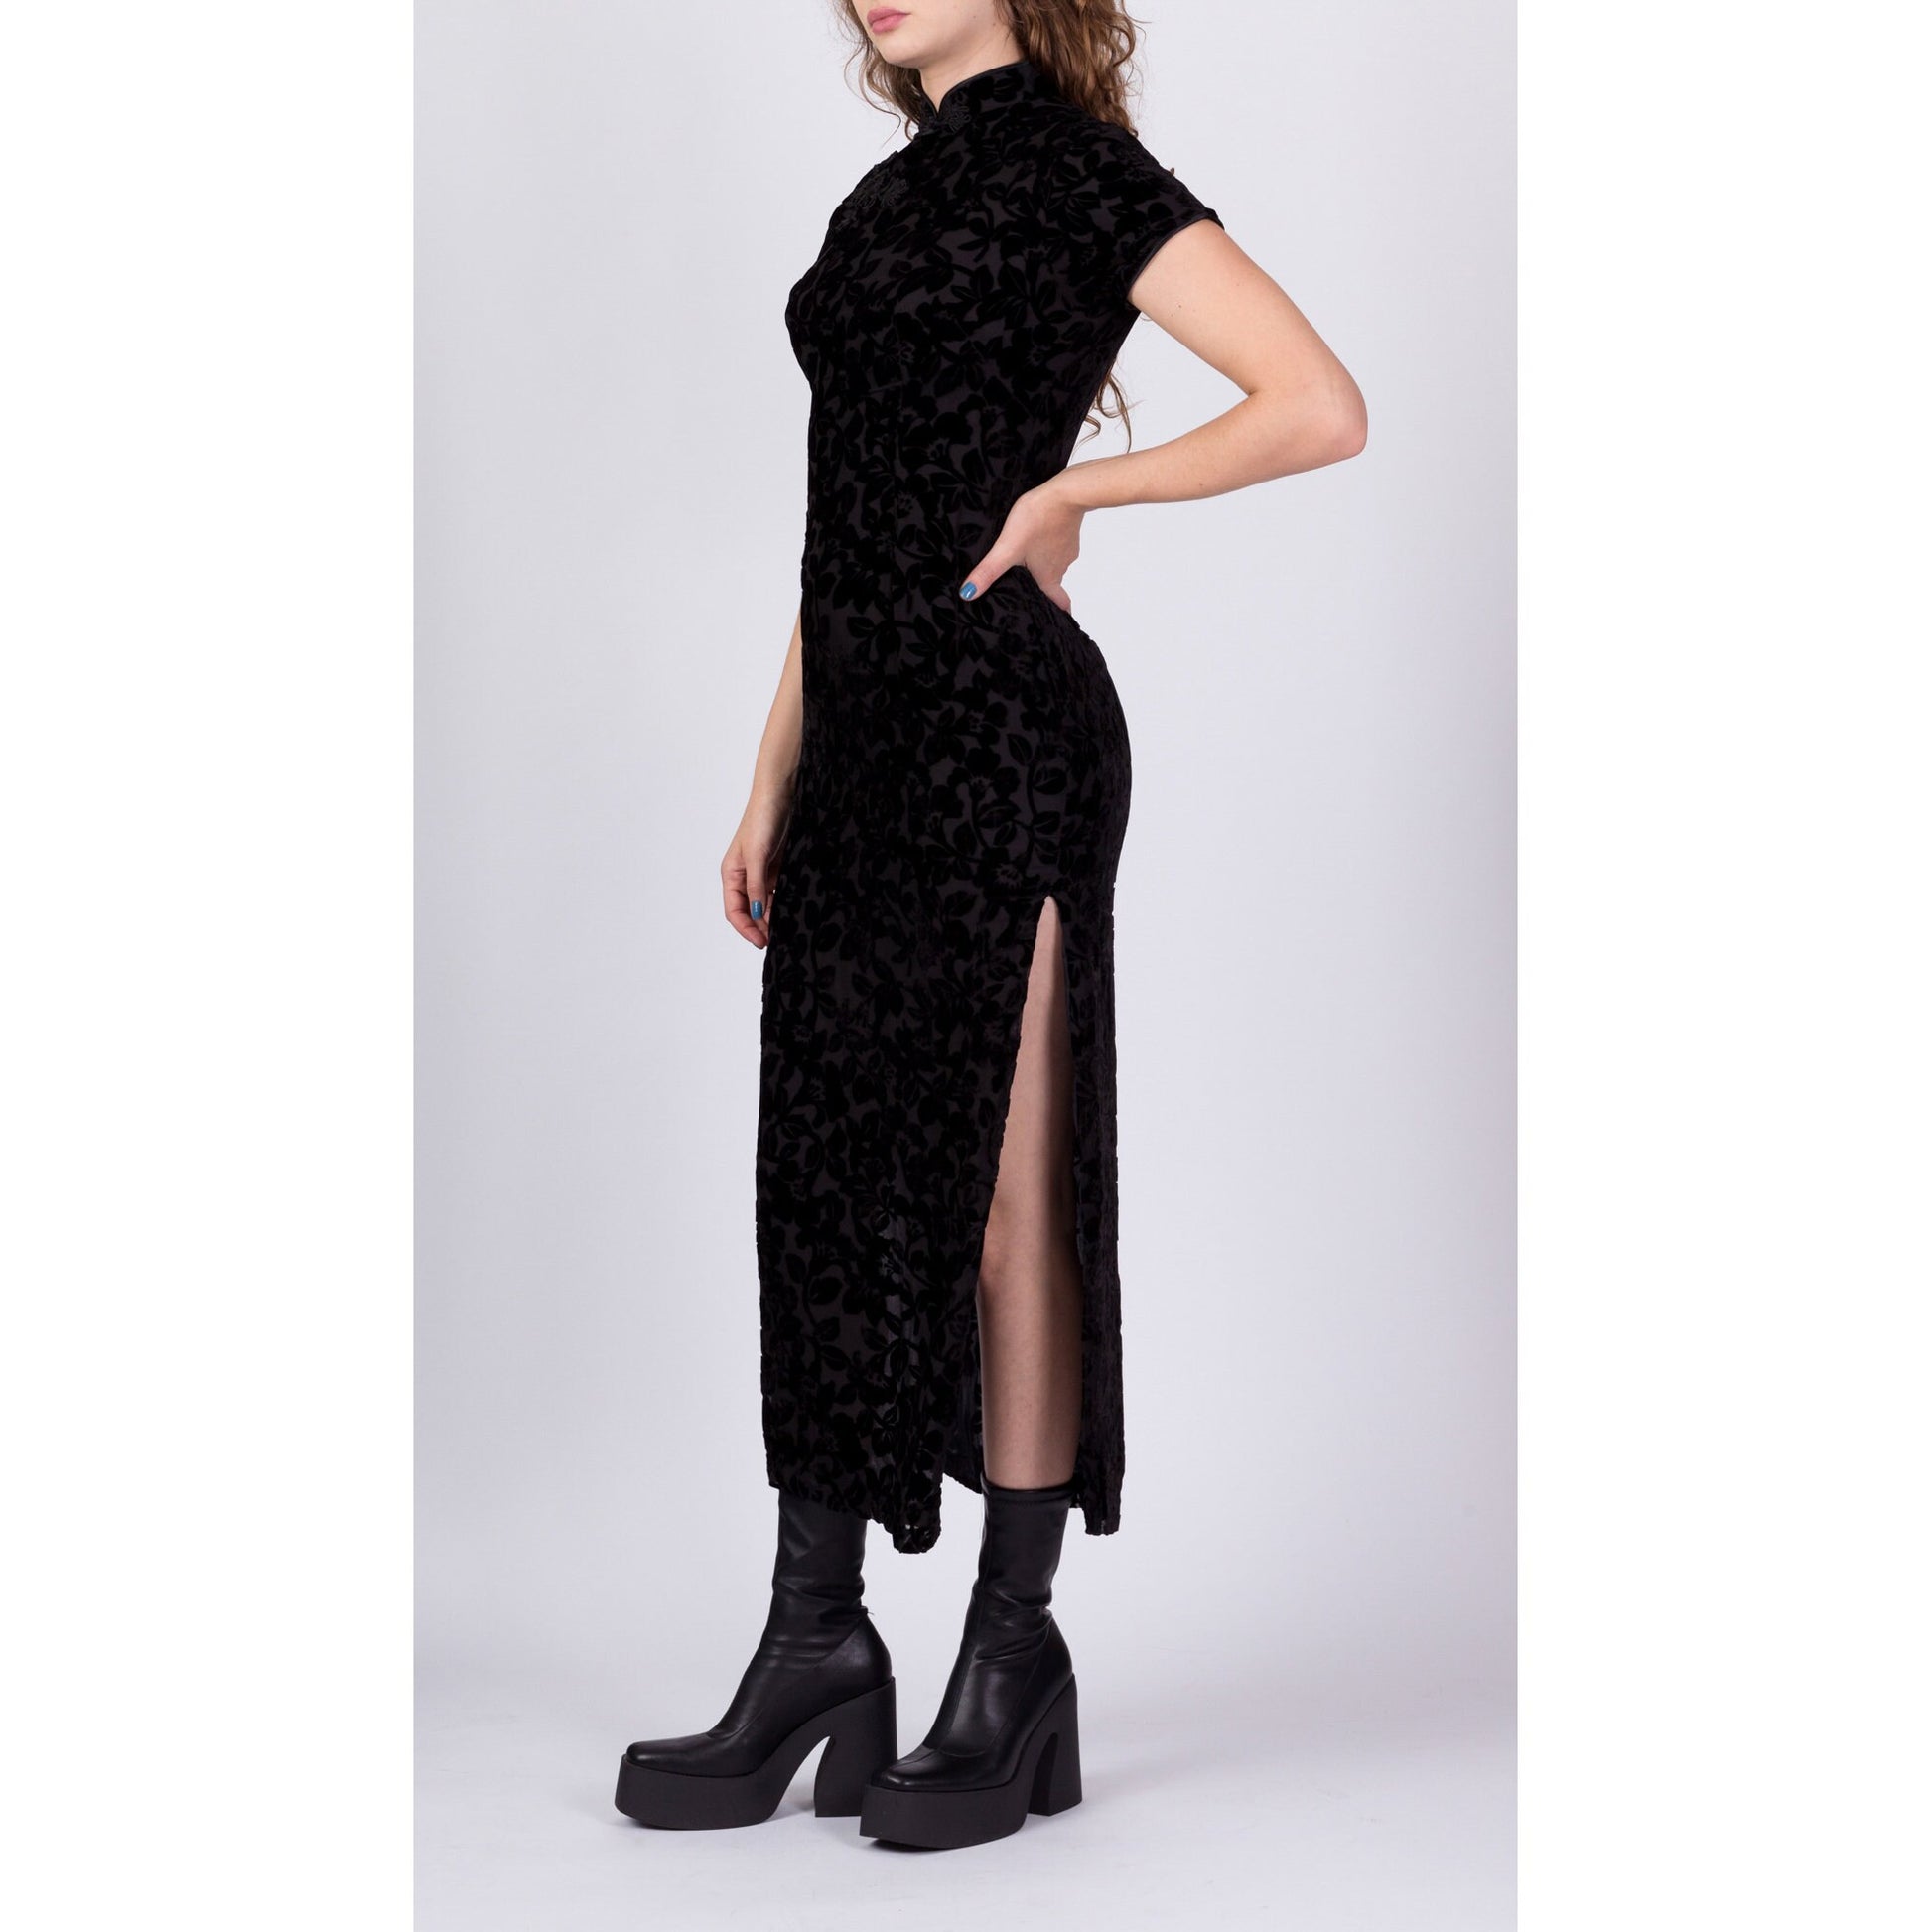 Vintage Black Velvet Burnout Cheongsam Dress, Deadstock - XS and Small 